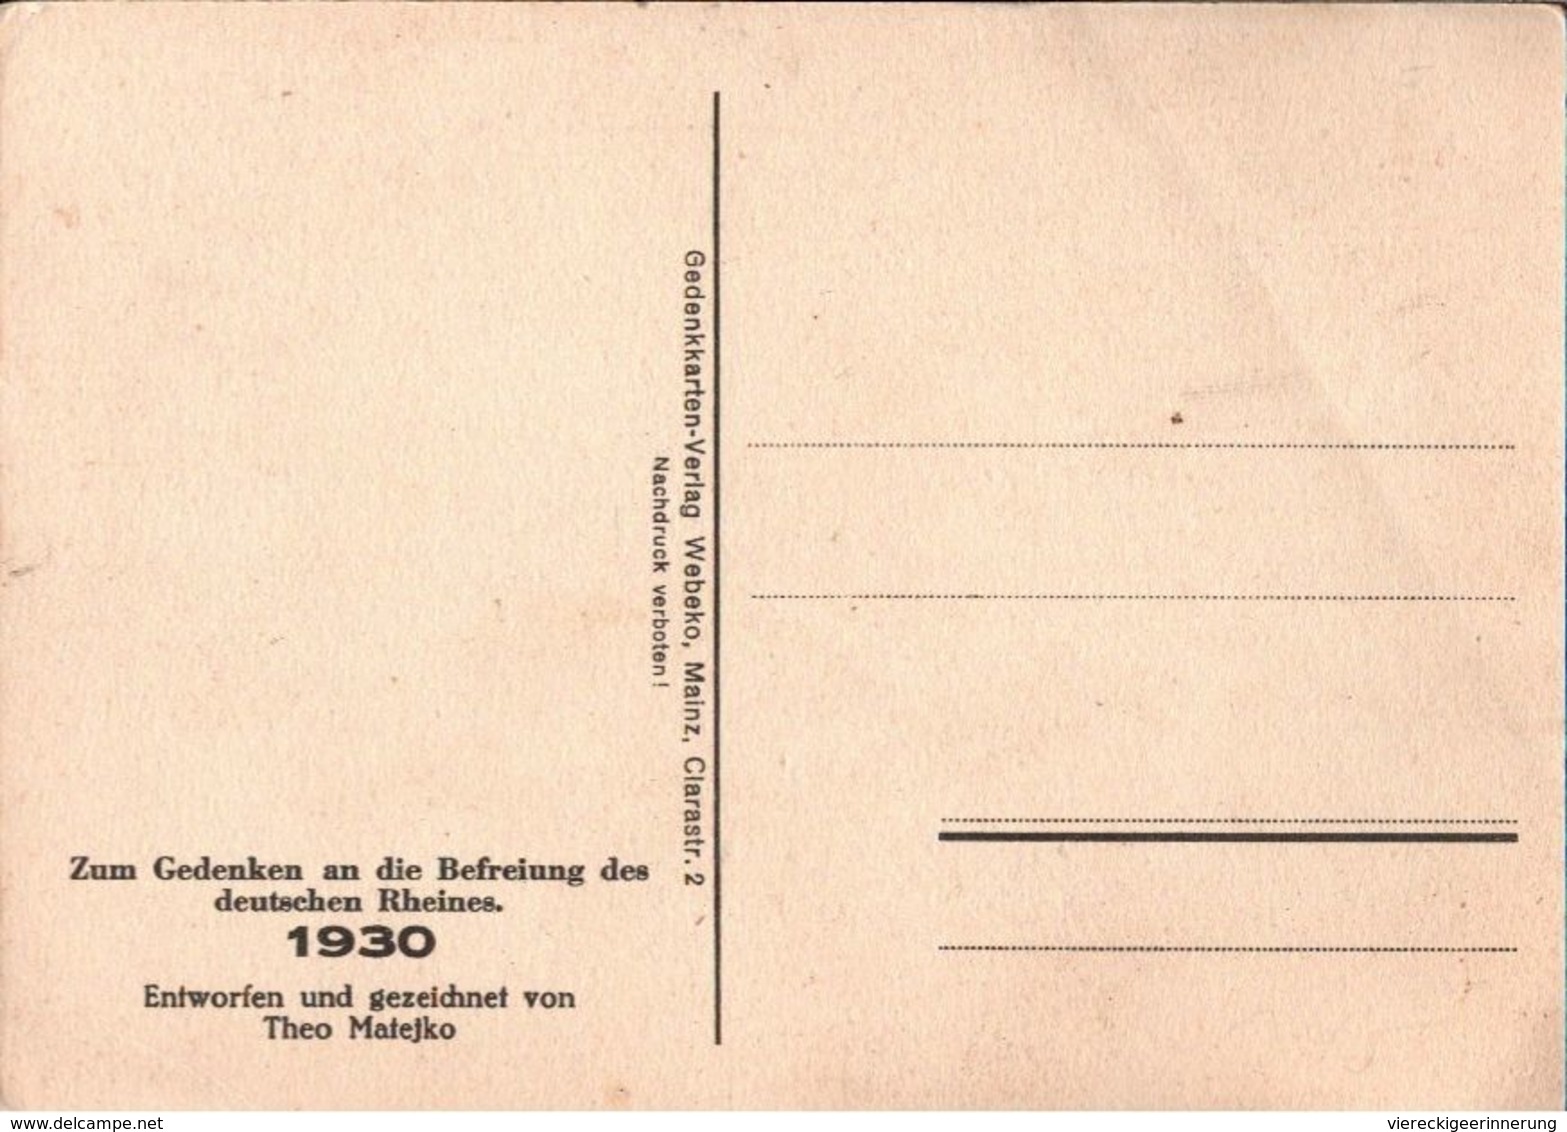 ! Alte Ansichtskarte, 1930 Rheinbefreiung, Künstlerkarte Sign. Theo Matejko, Propaganda, Rheinbesetzung - Ereignisse